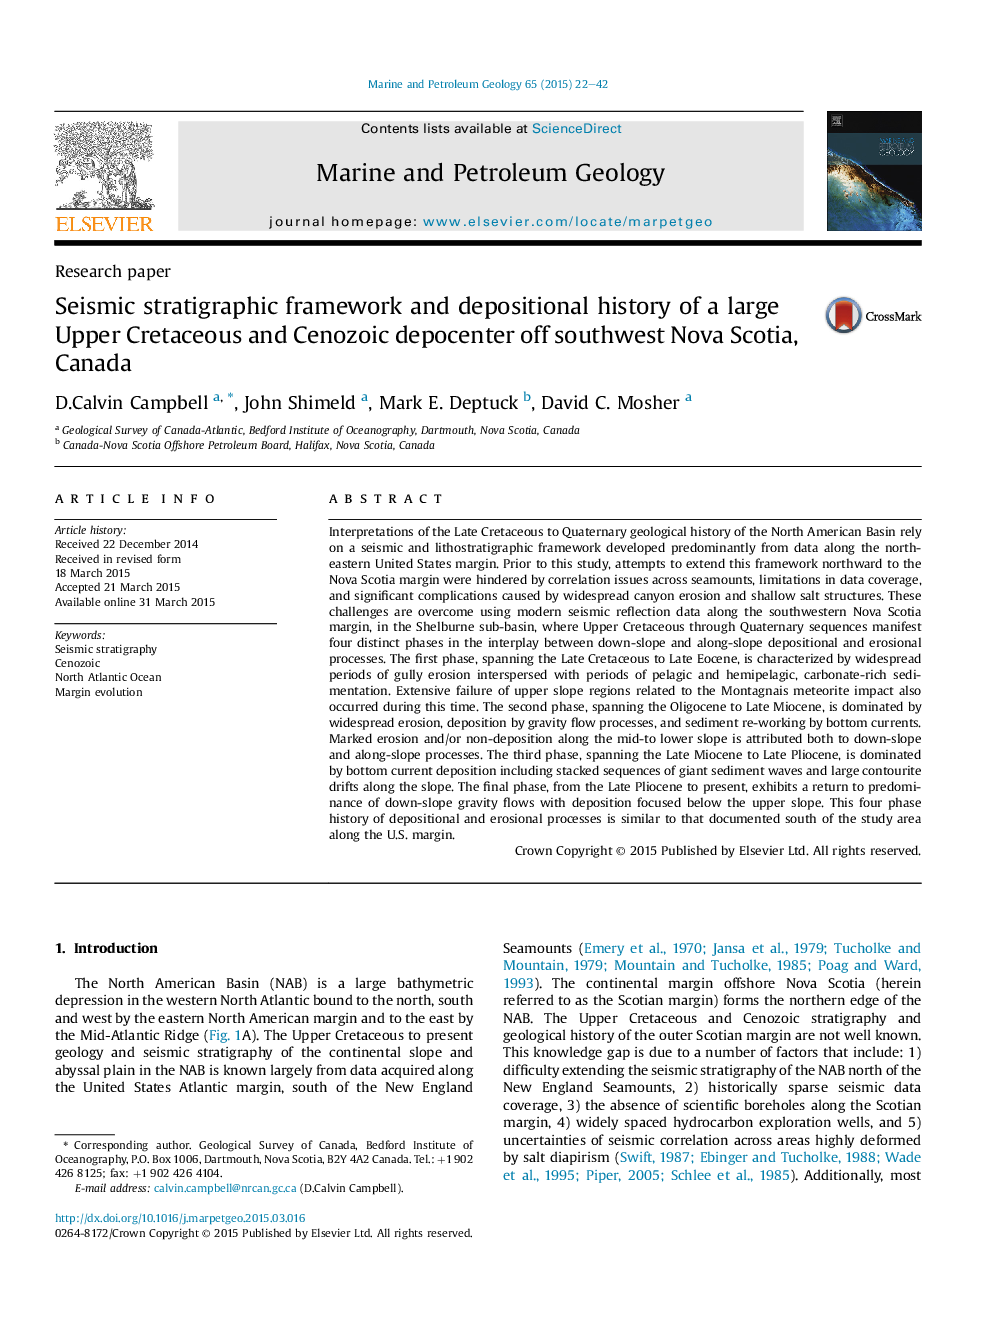 چارچوب چینه نگاری لرزه نگاری و تاریخ رسوب دهانه کرتاسه بالا و سنوزوئیک بالا در جنوب غربی نوا اسکوشیا، کانادا 